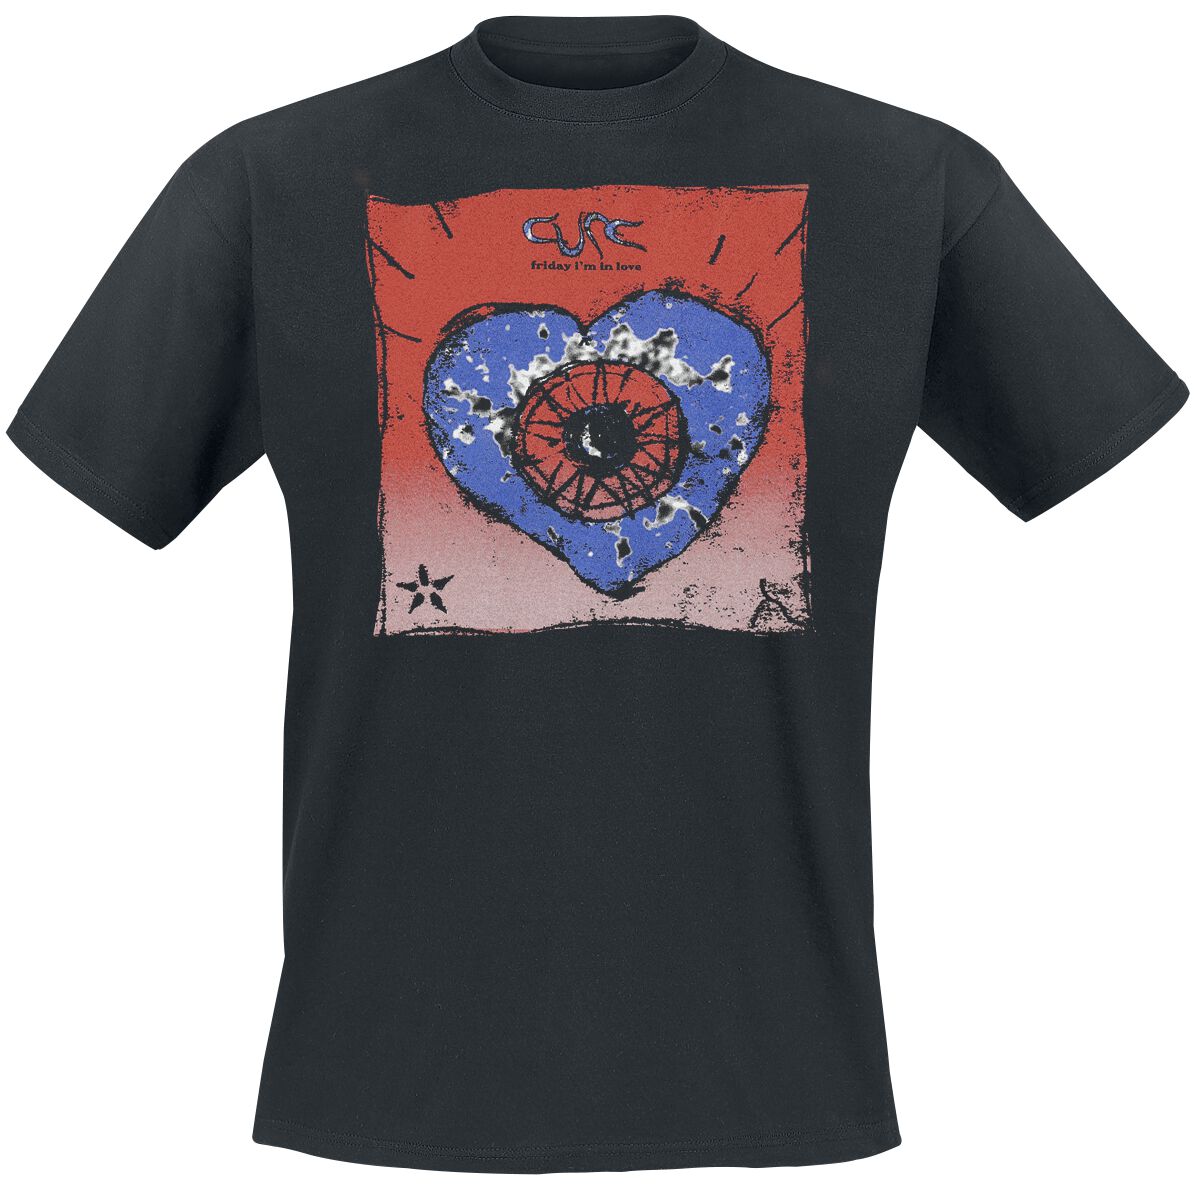 The Cure T-Shirt - Friday I`m In Love - S bis 4XL - für Männer - Größe L - schwarz  - Lizenziertes Merchandise!